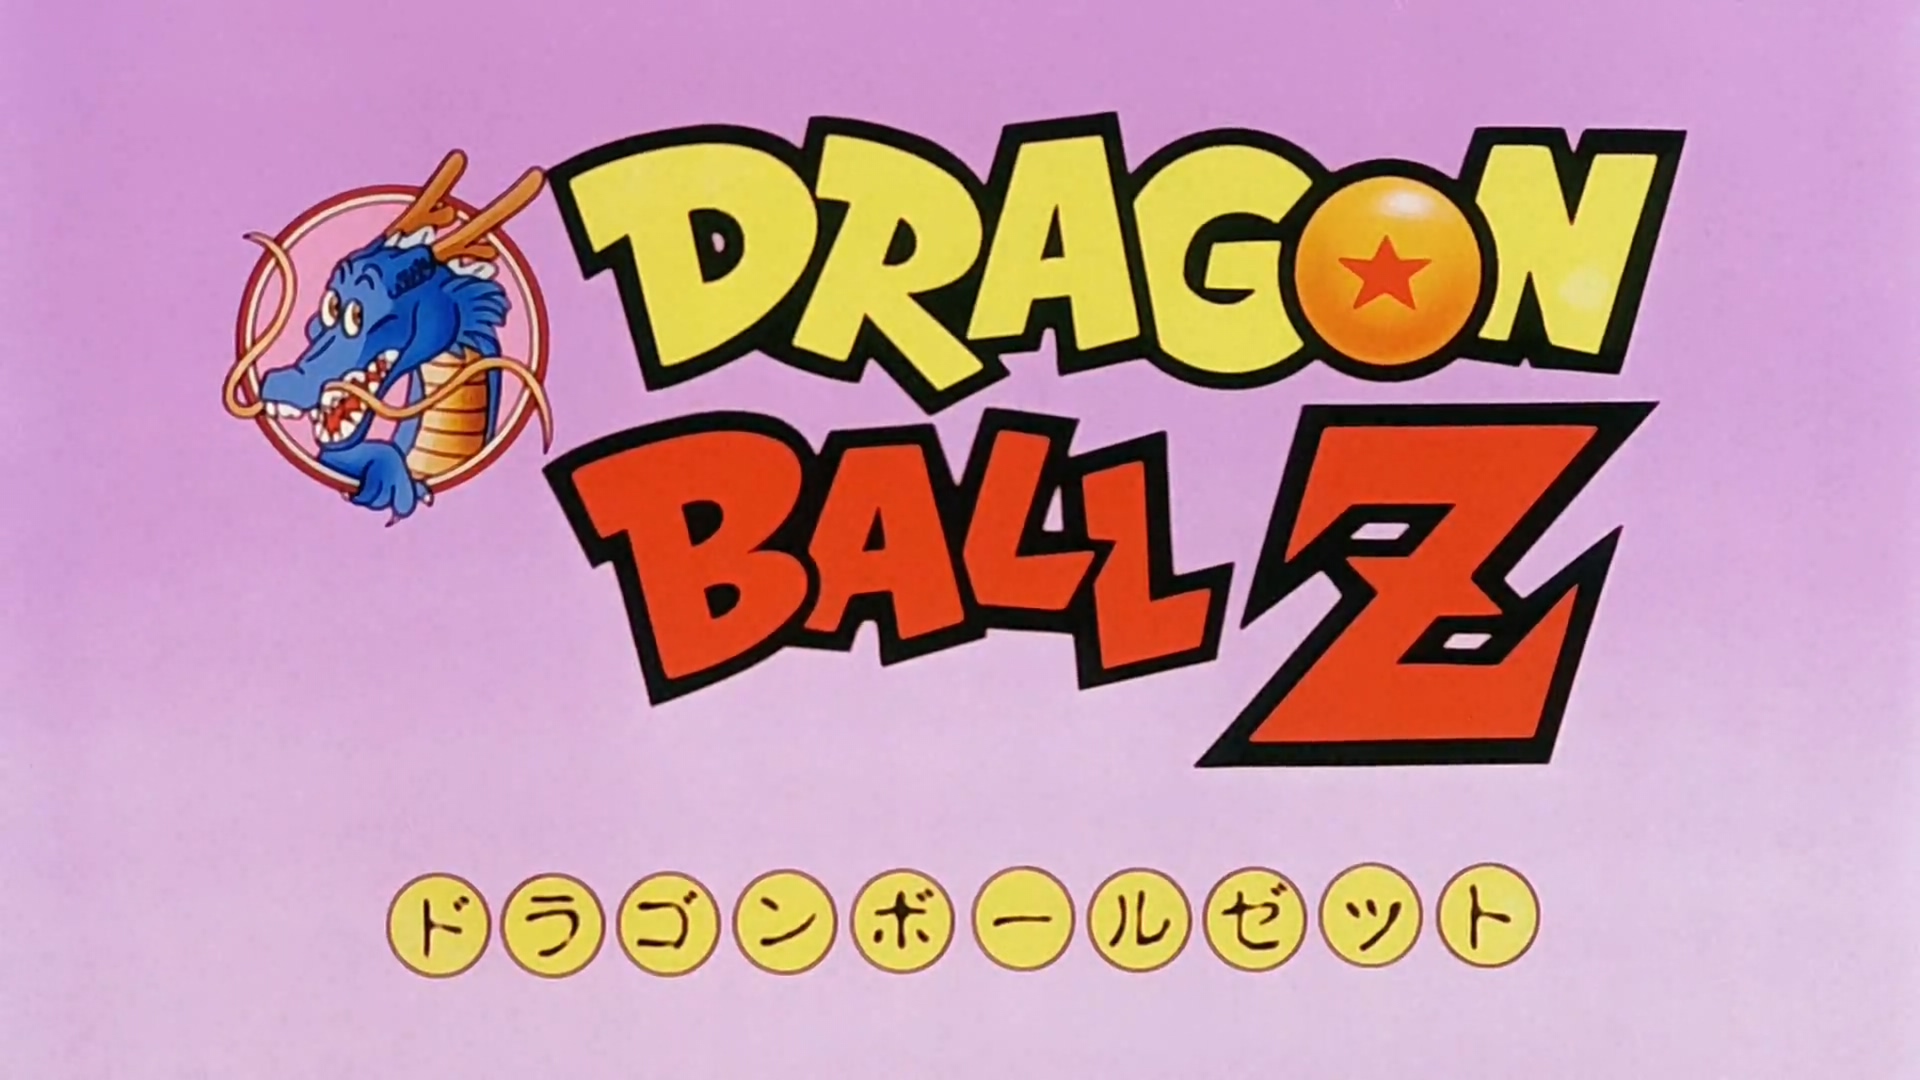 Dragonball.Z.-.200.-.1080p.BluRay.x264.DHD.mkv_20150315_145358.770.jpg